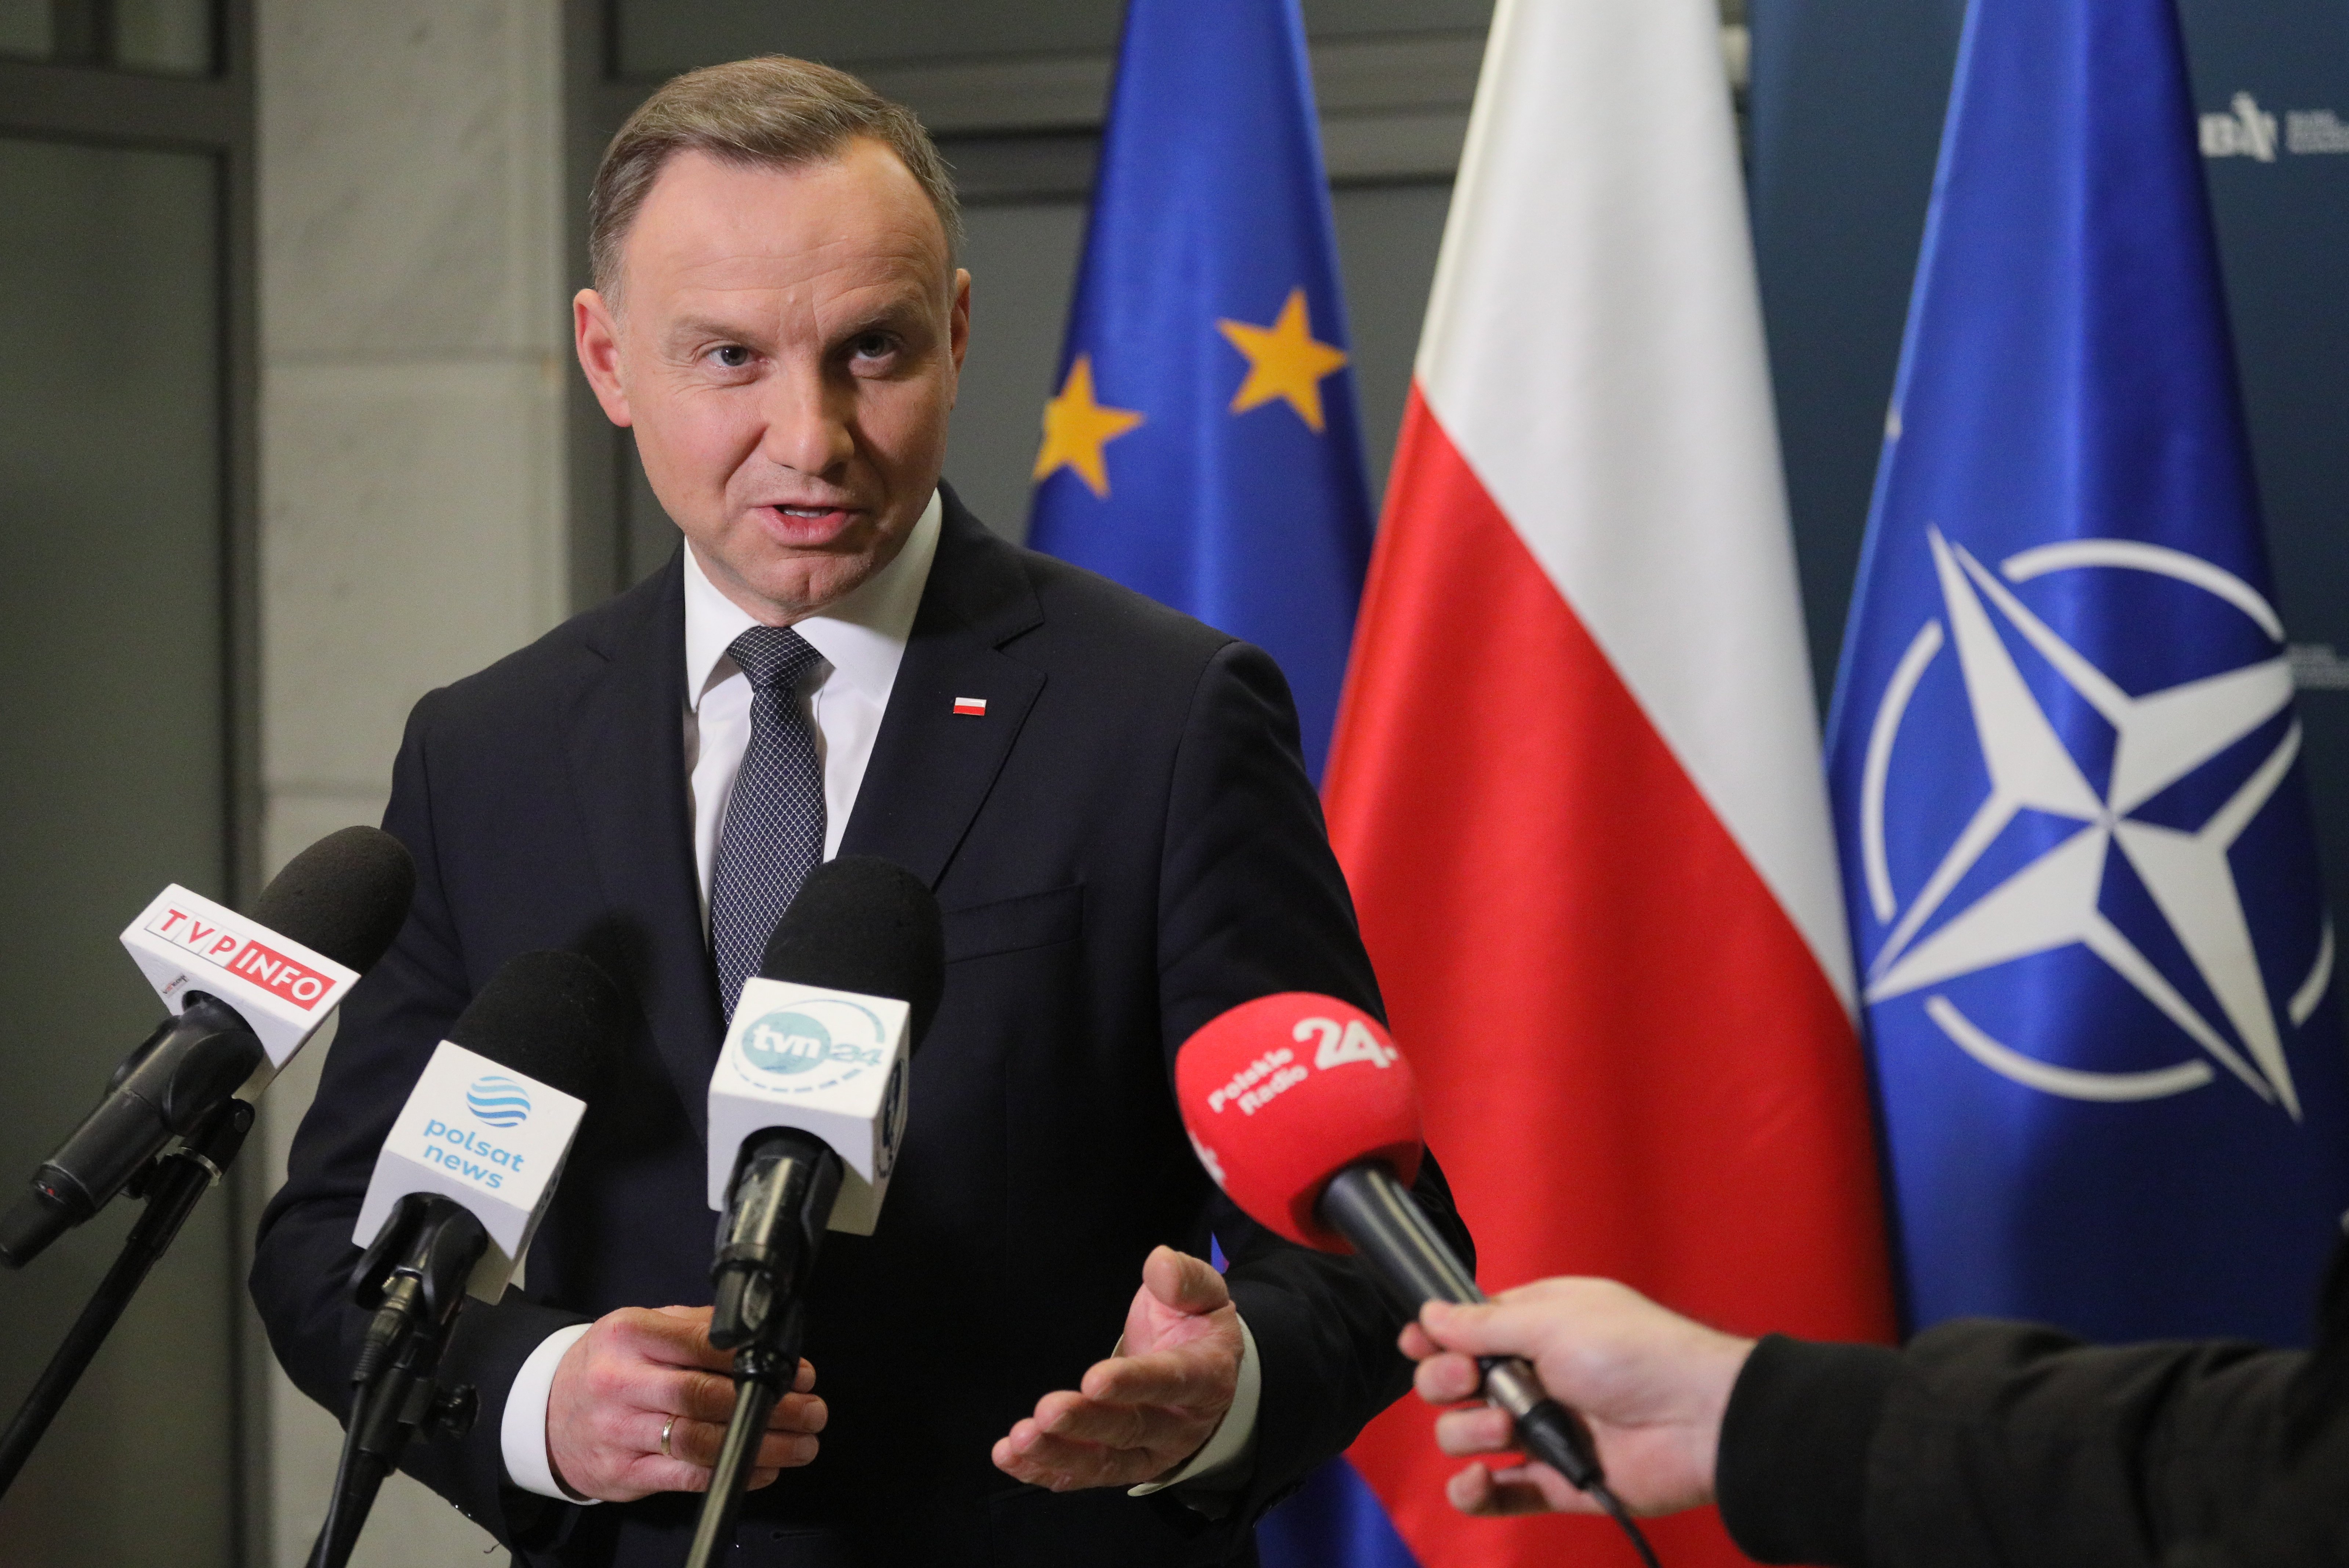 El presidente de Polonia apunta que los misiles son "probablemente un incidente desafortunado"